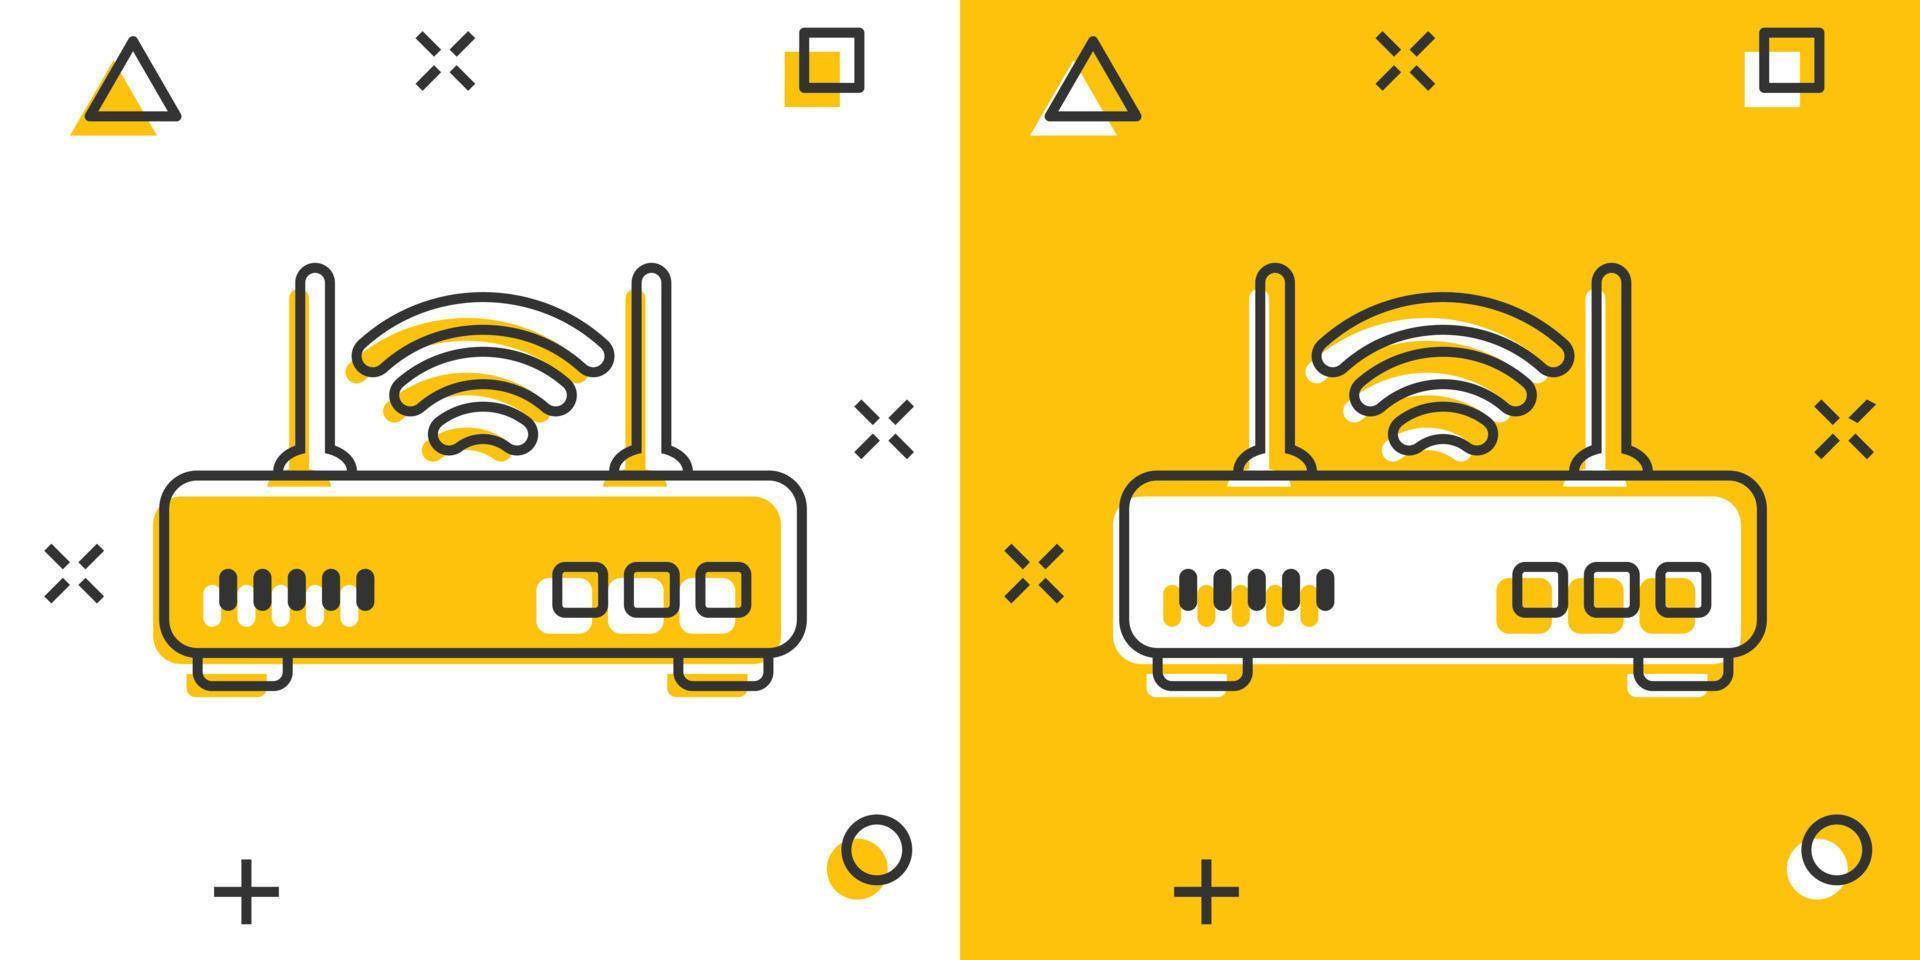 icône de routeur wifi dans le style comique. illustration de vecteur de dessin animé à large bande sur fond blanc isolé. concept d'entreprise d'effet d'éclaboussure de connexion internet.